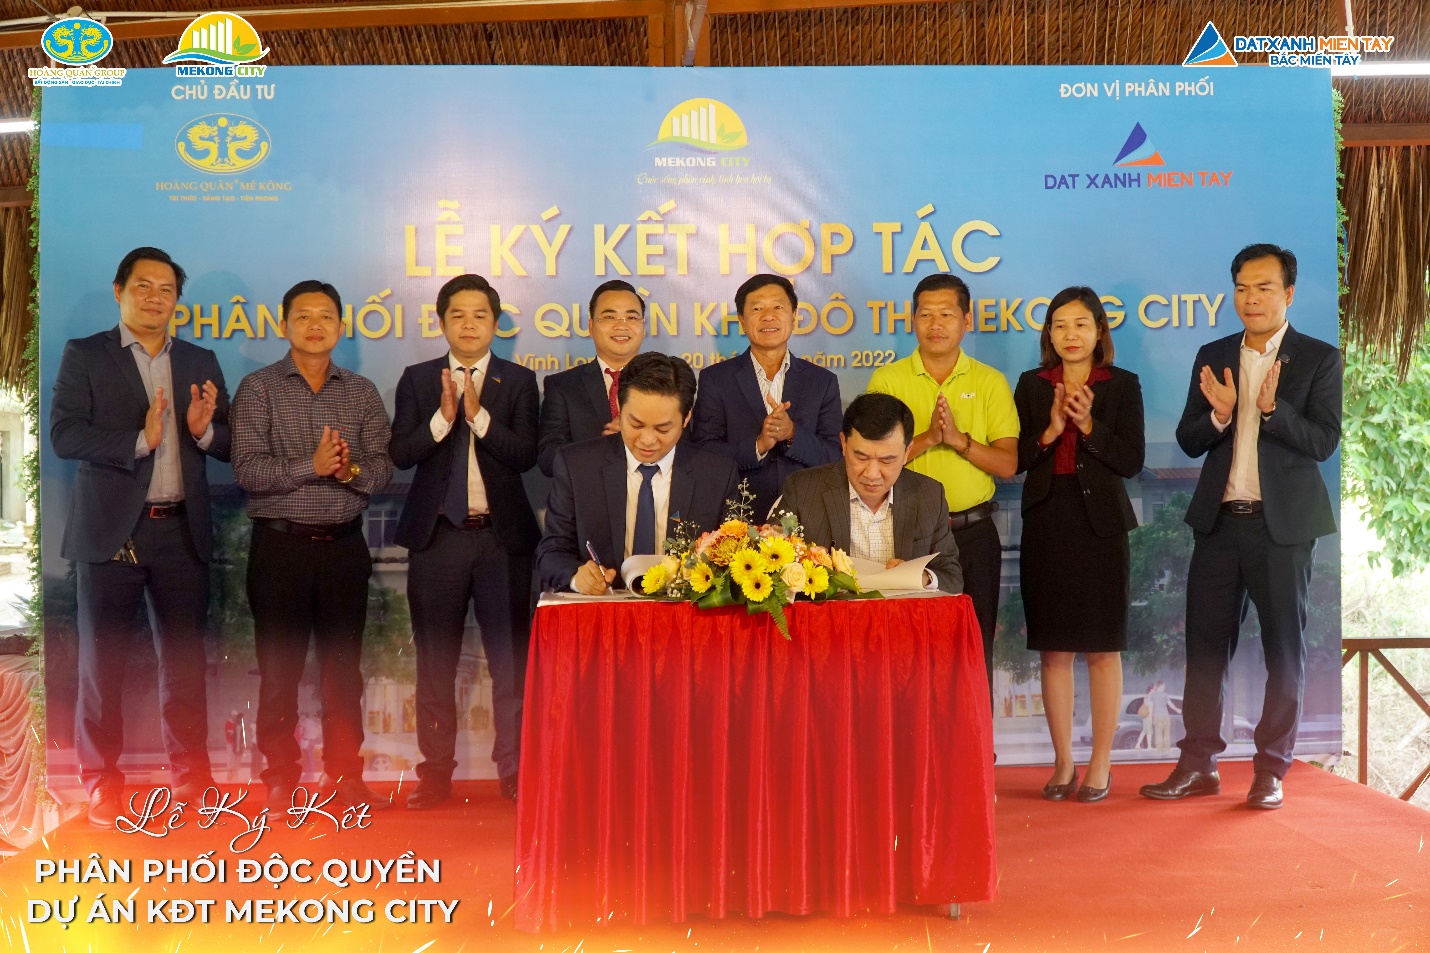 Lễ ký kết hợp tác phân phối độc quyền Khu đô thị Mekong City - 1